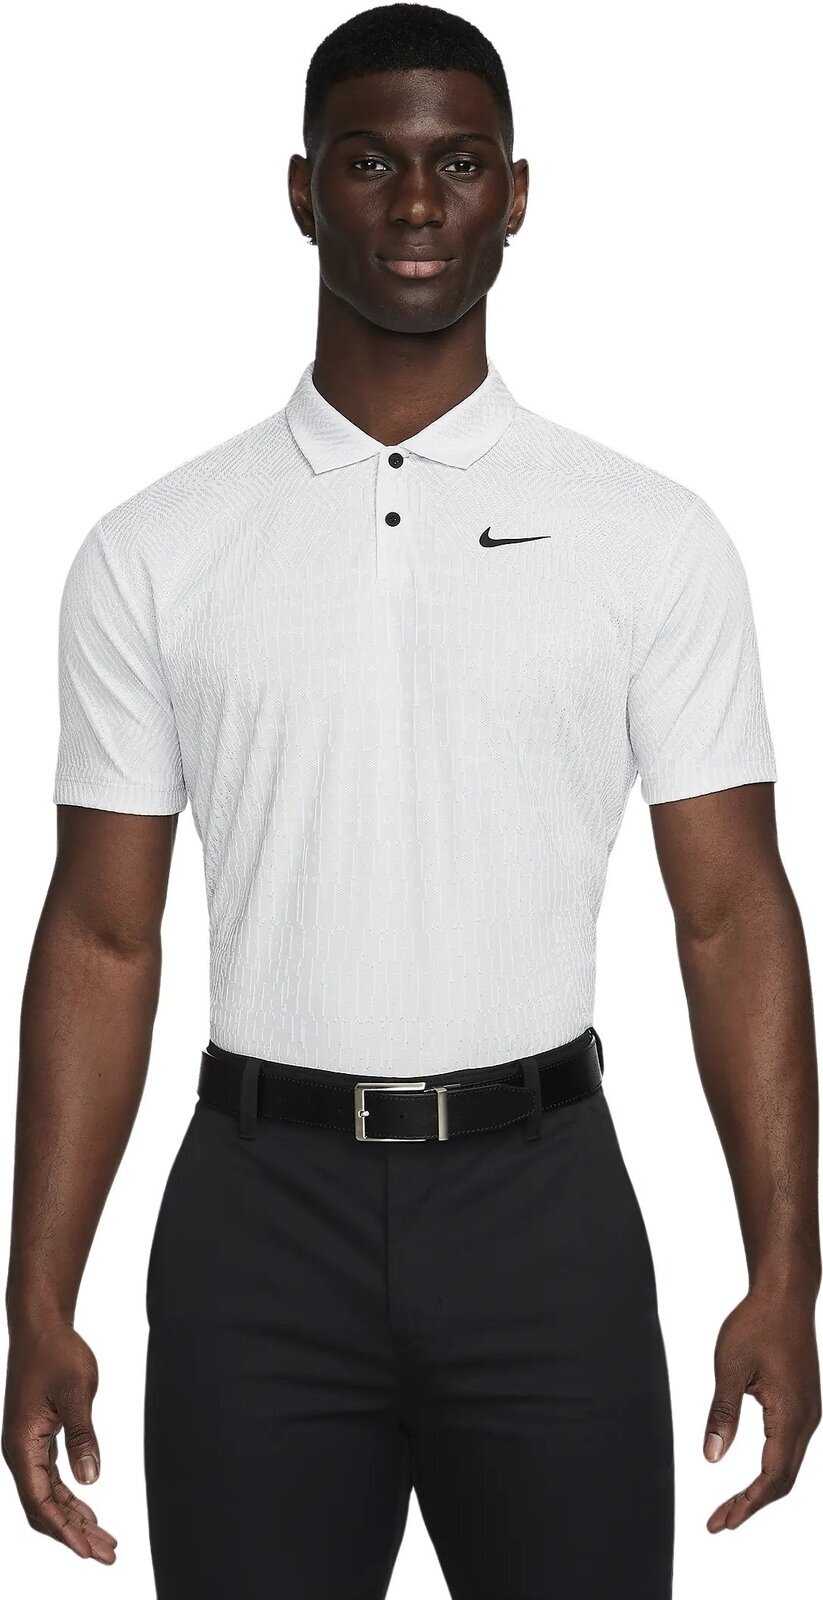 Camiseta polo Nike Dri-Fit ADV Tour Mens Polo White/Pure Platinum/Black XL Camiseta polo